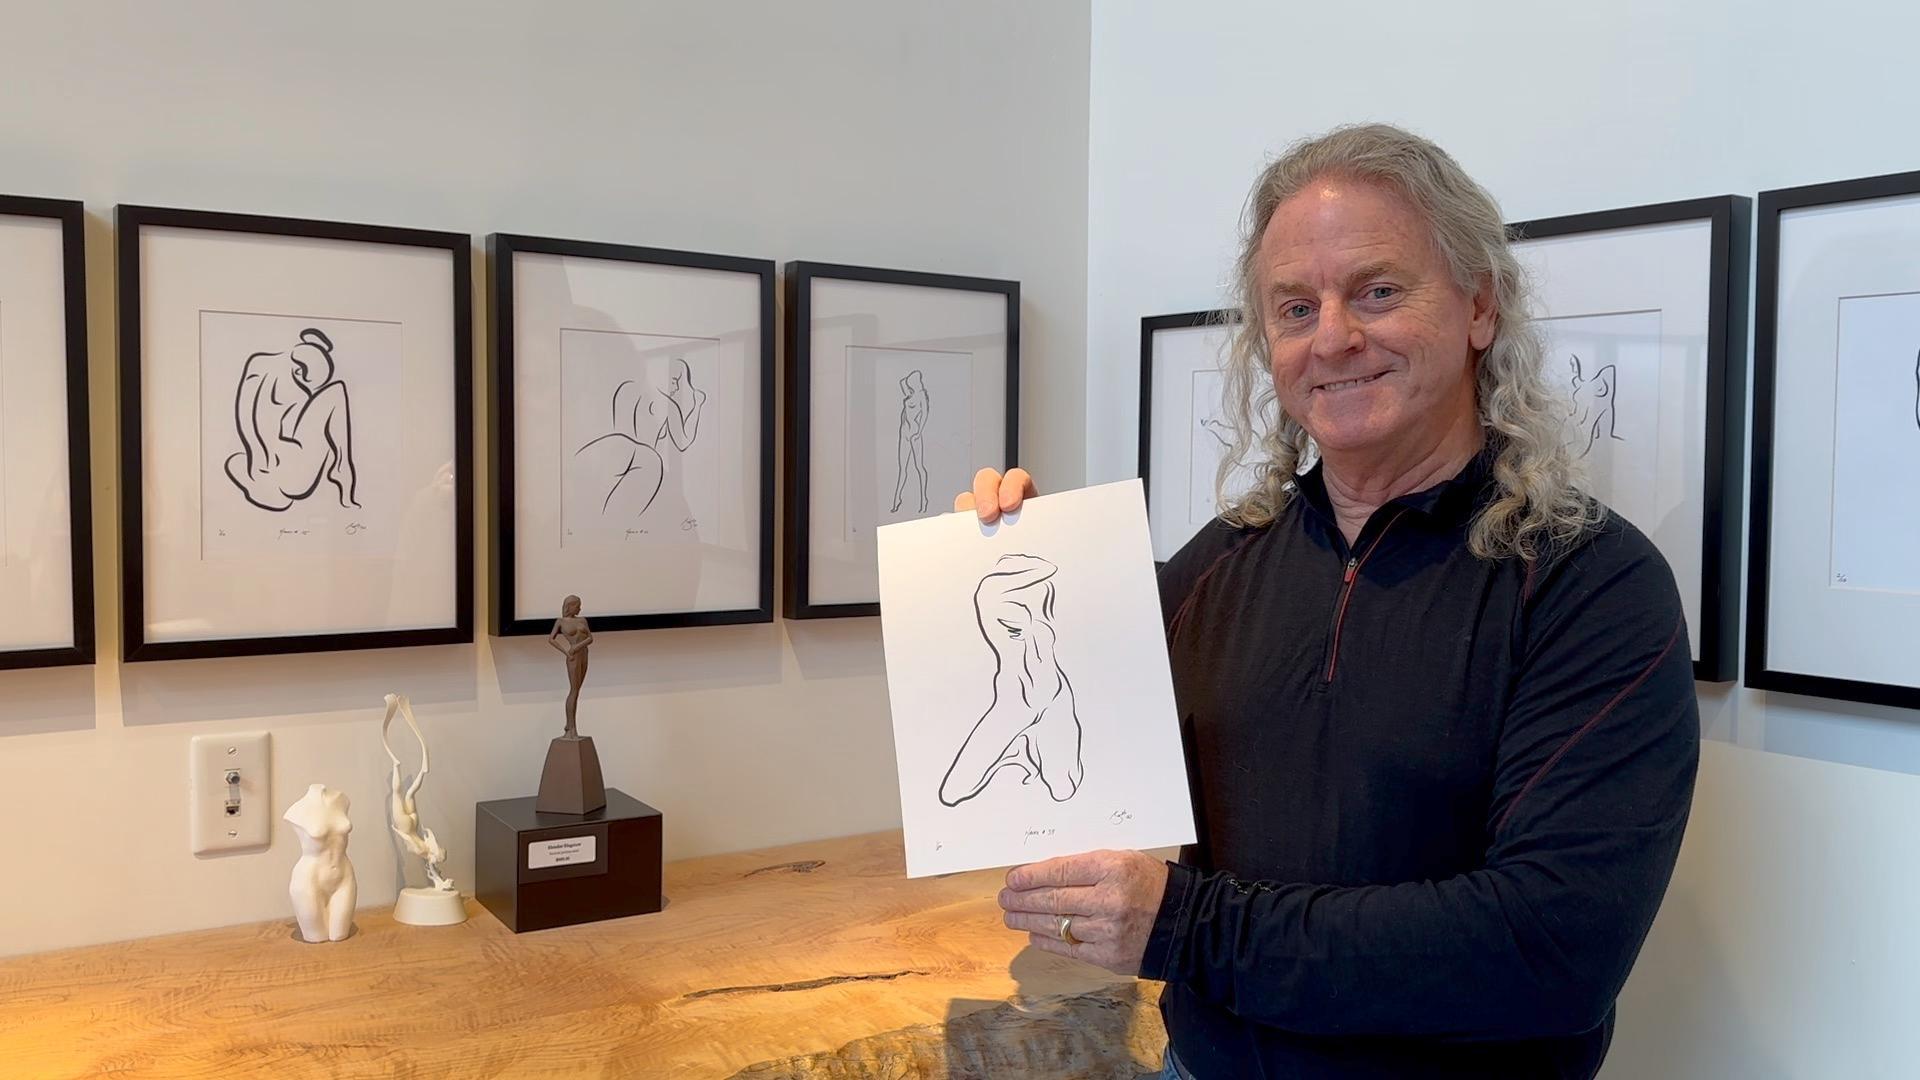 Haiku #39, 1/50 - Digital Vector Drawing Kneeling Female Nude Woman Figure - Contemporary Print by Michael Binkley